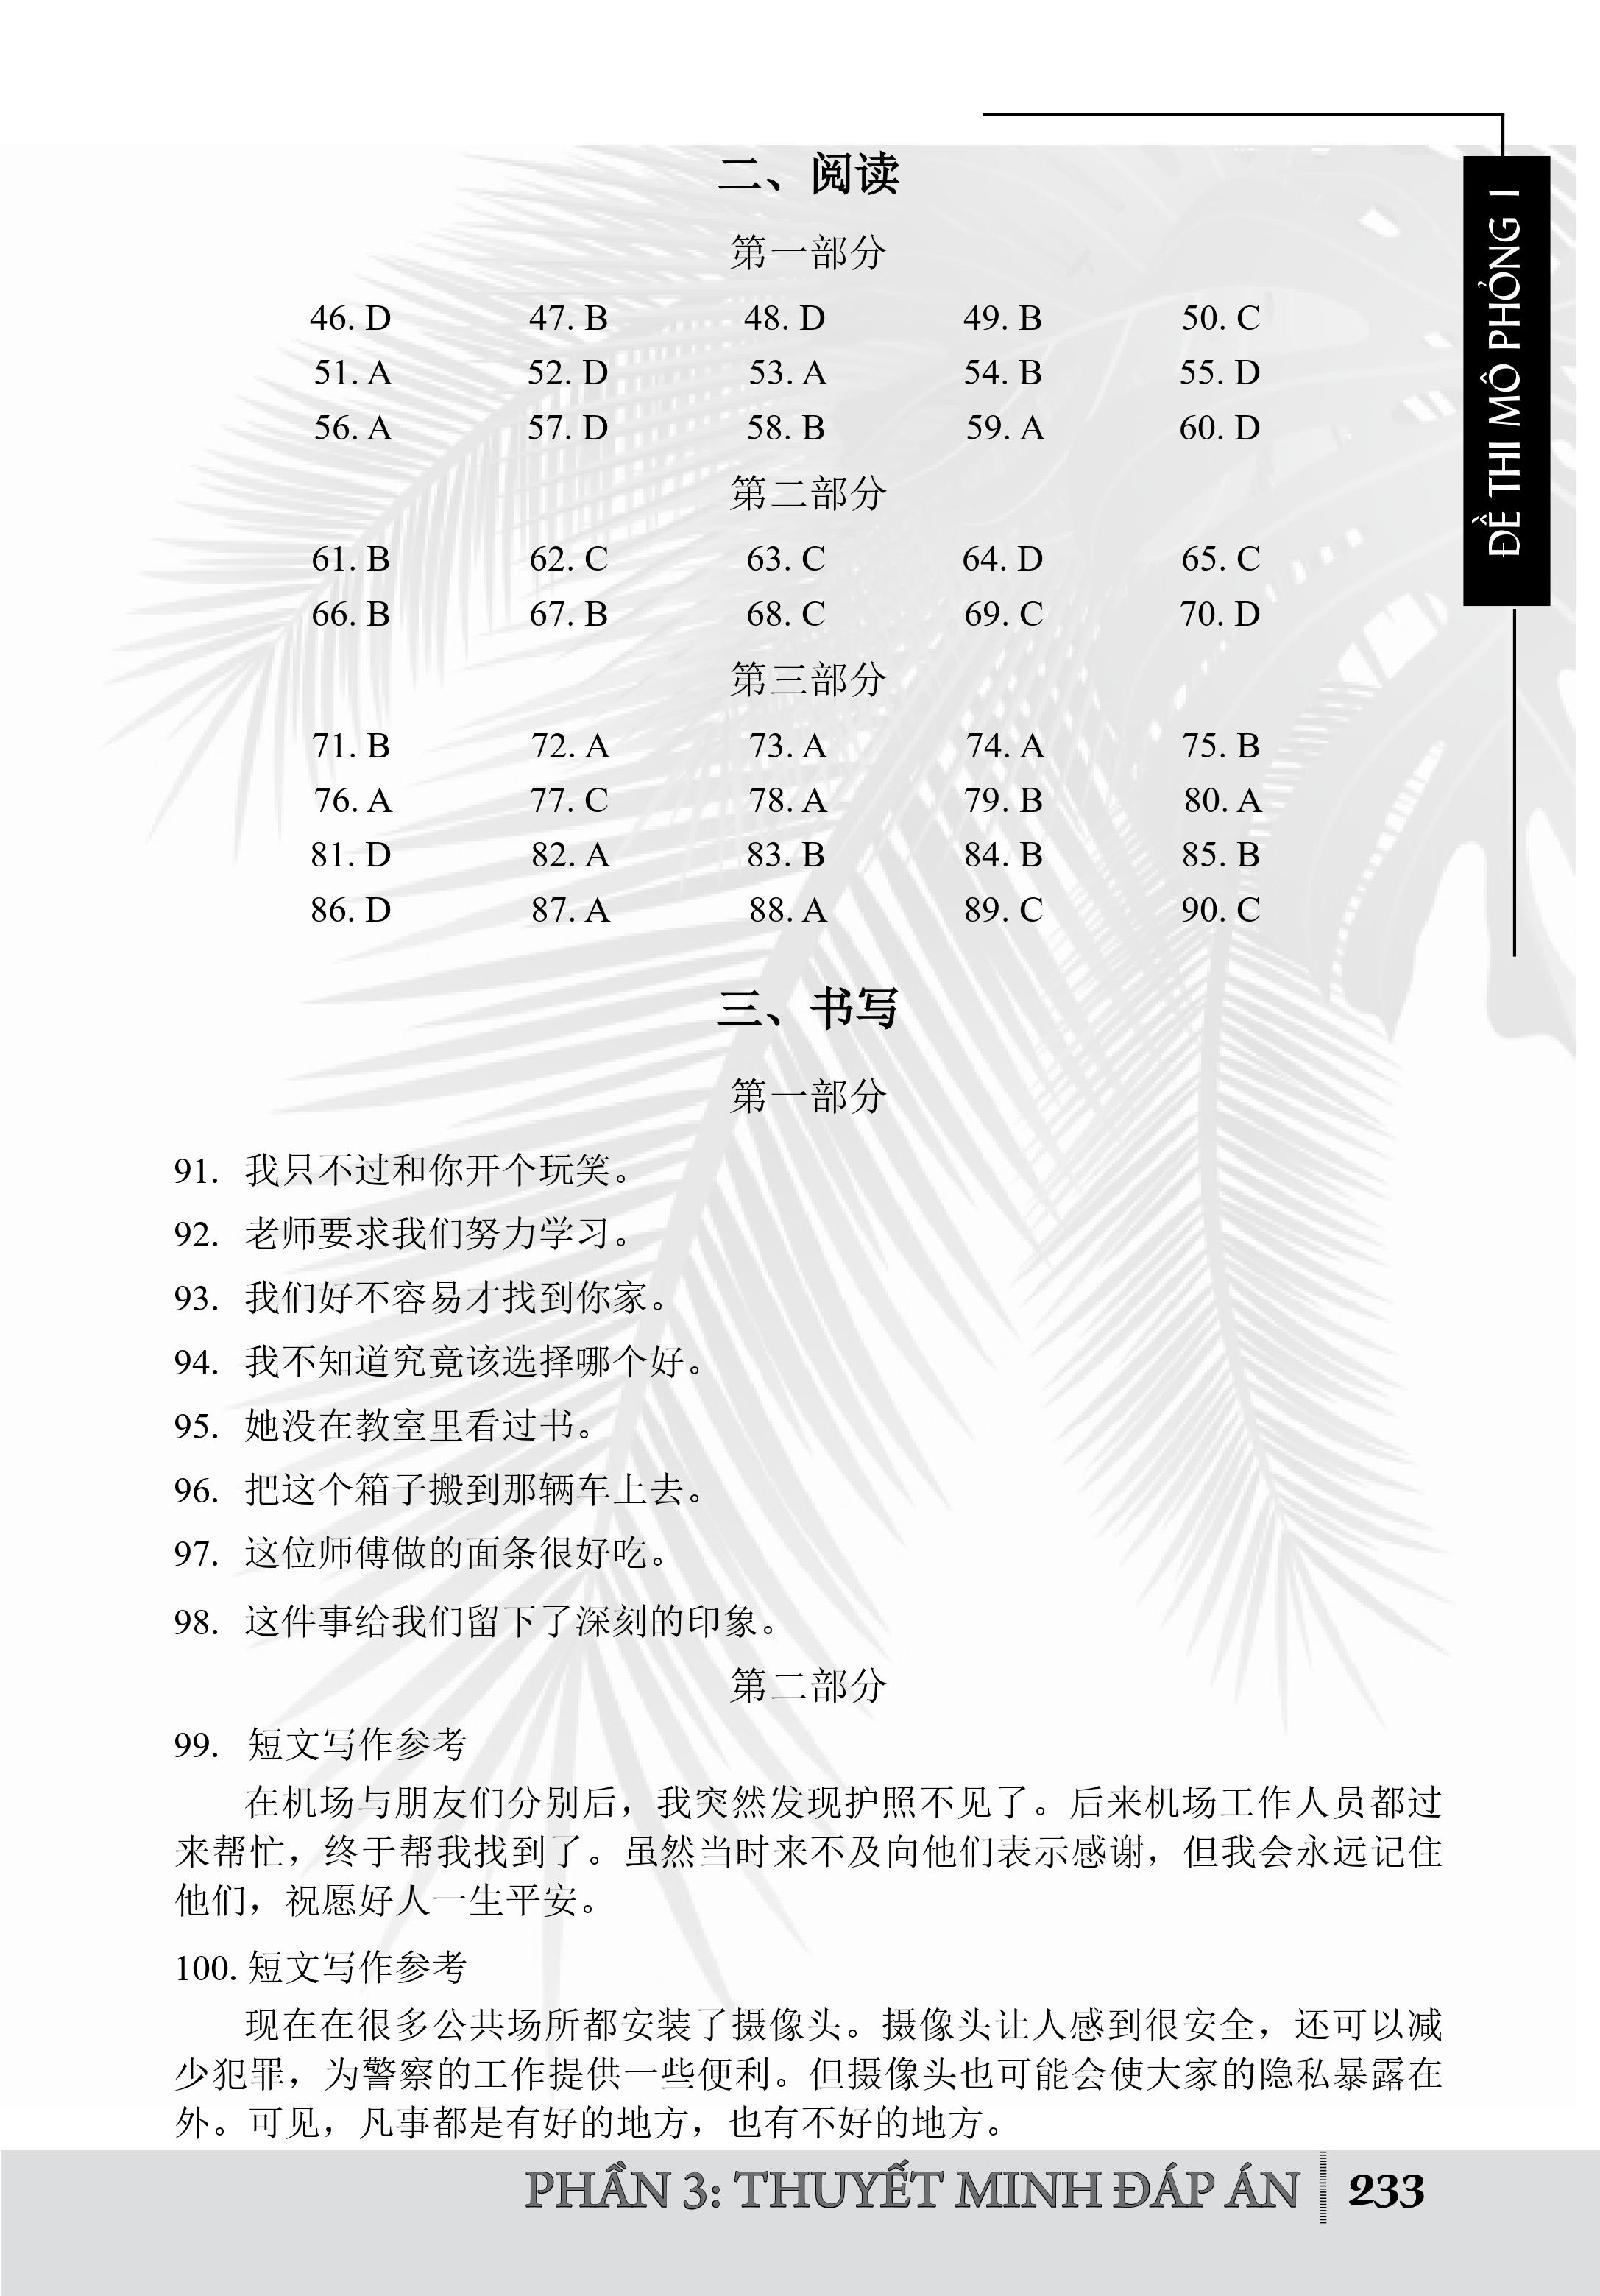 Combo 2 sách Luyện giải đề thi HSK cấp 5 có mp3 nge +Tuyển tập 400 mẫu bài dịch Trung – Việt, Việt – Trung hay nhất (Song ngữ Trung – Việt – có phiên âm, có Audio nghe)+DVD tài liệu